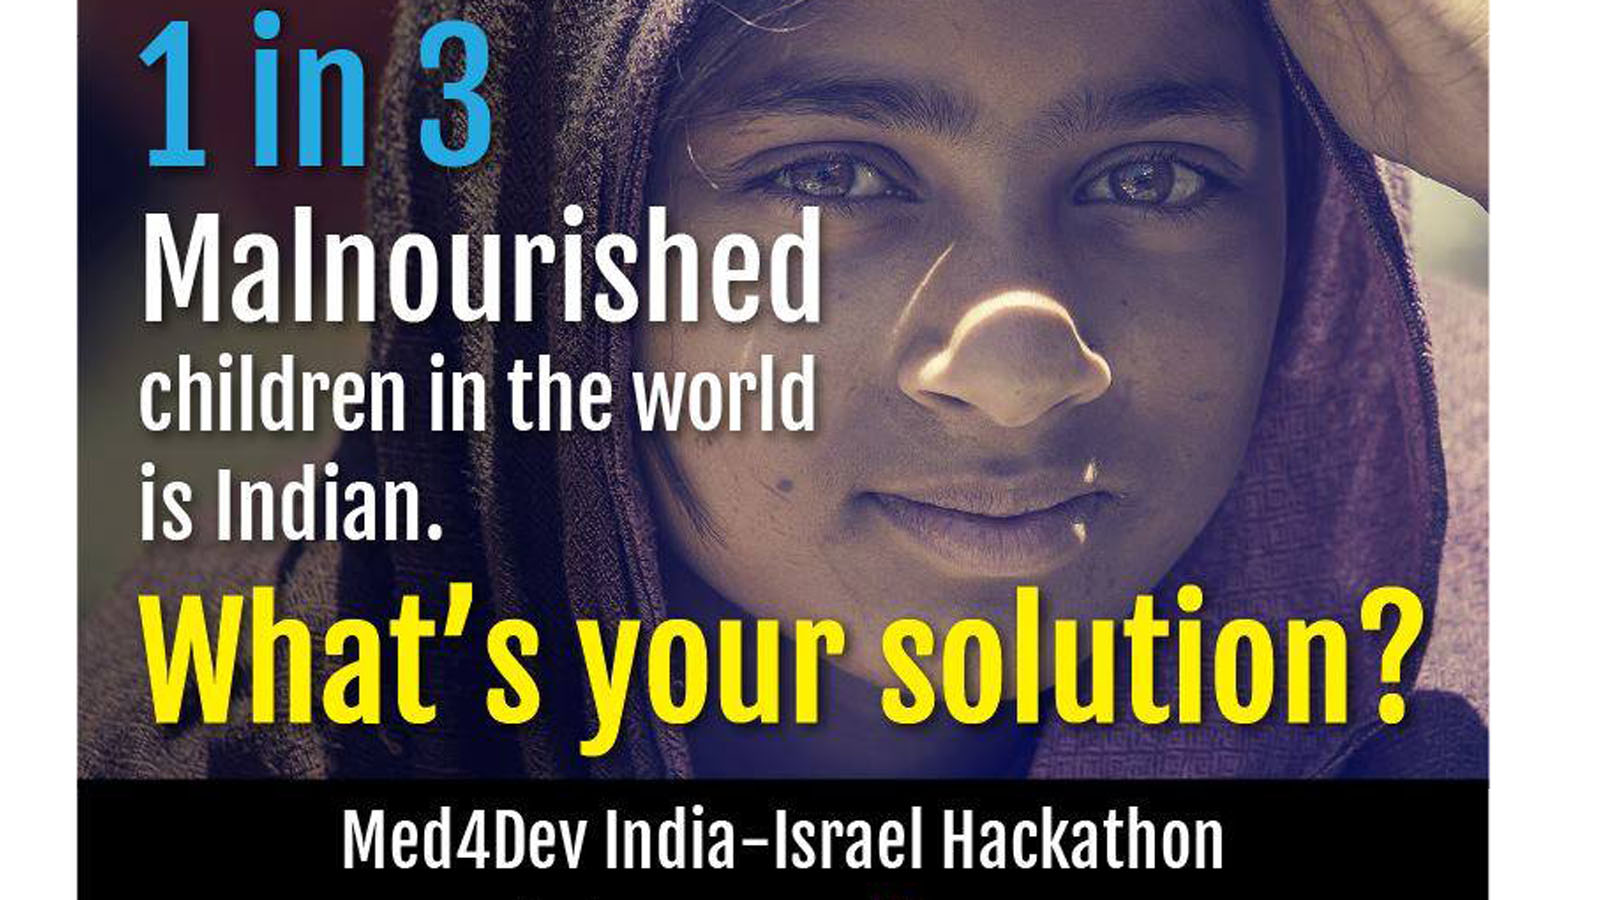 MED4DEV hackathon. Photo via Facebook